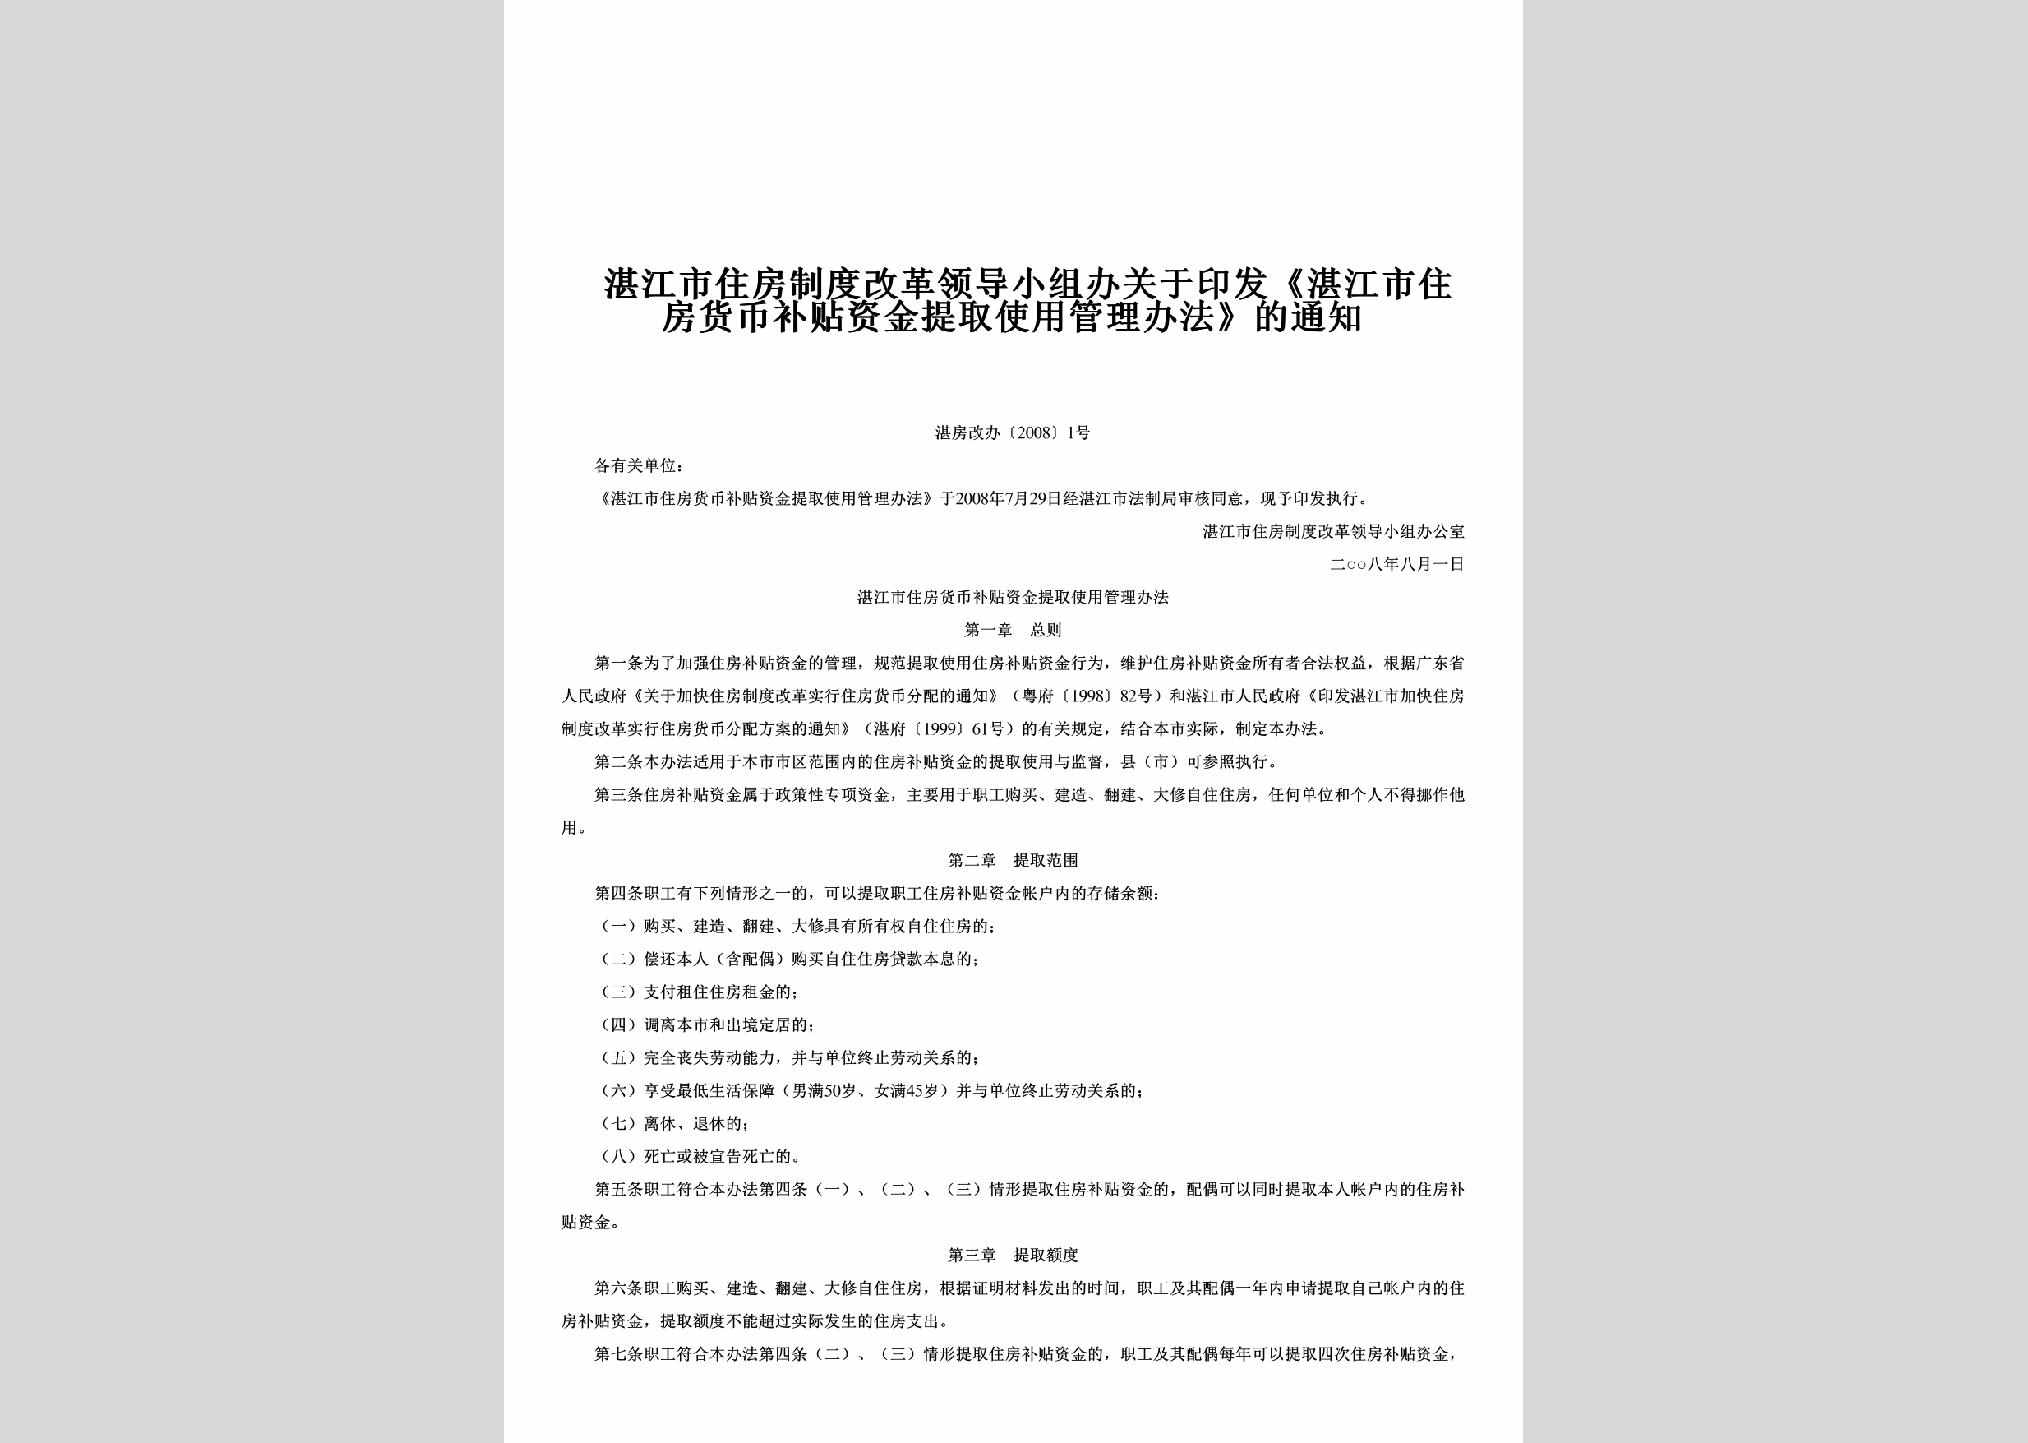 湛房改办[2008]1号：关于印发《湛江市住房货币补贴资金提取使用管理办法》的通知